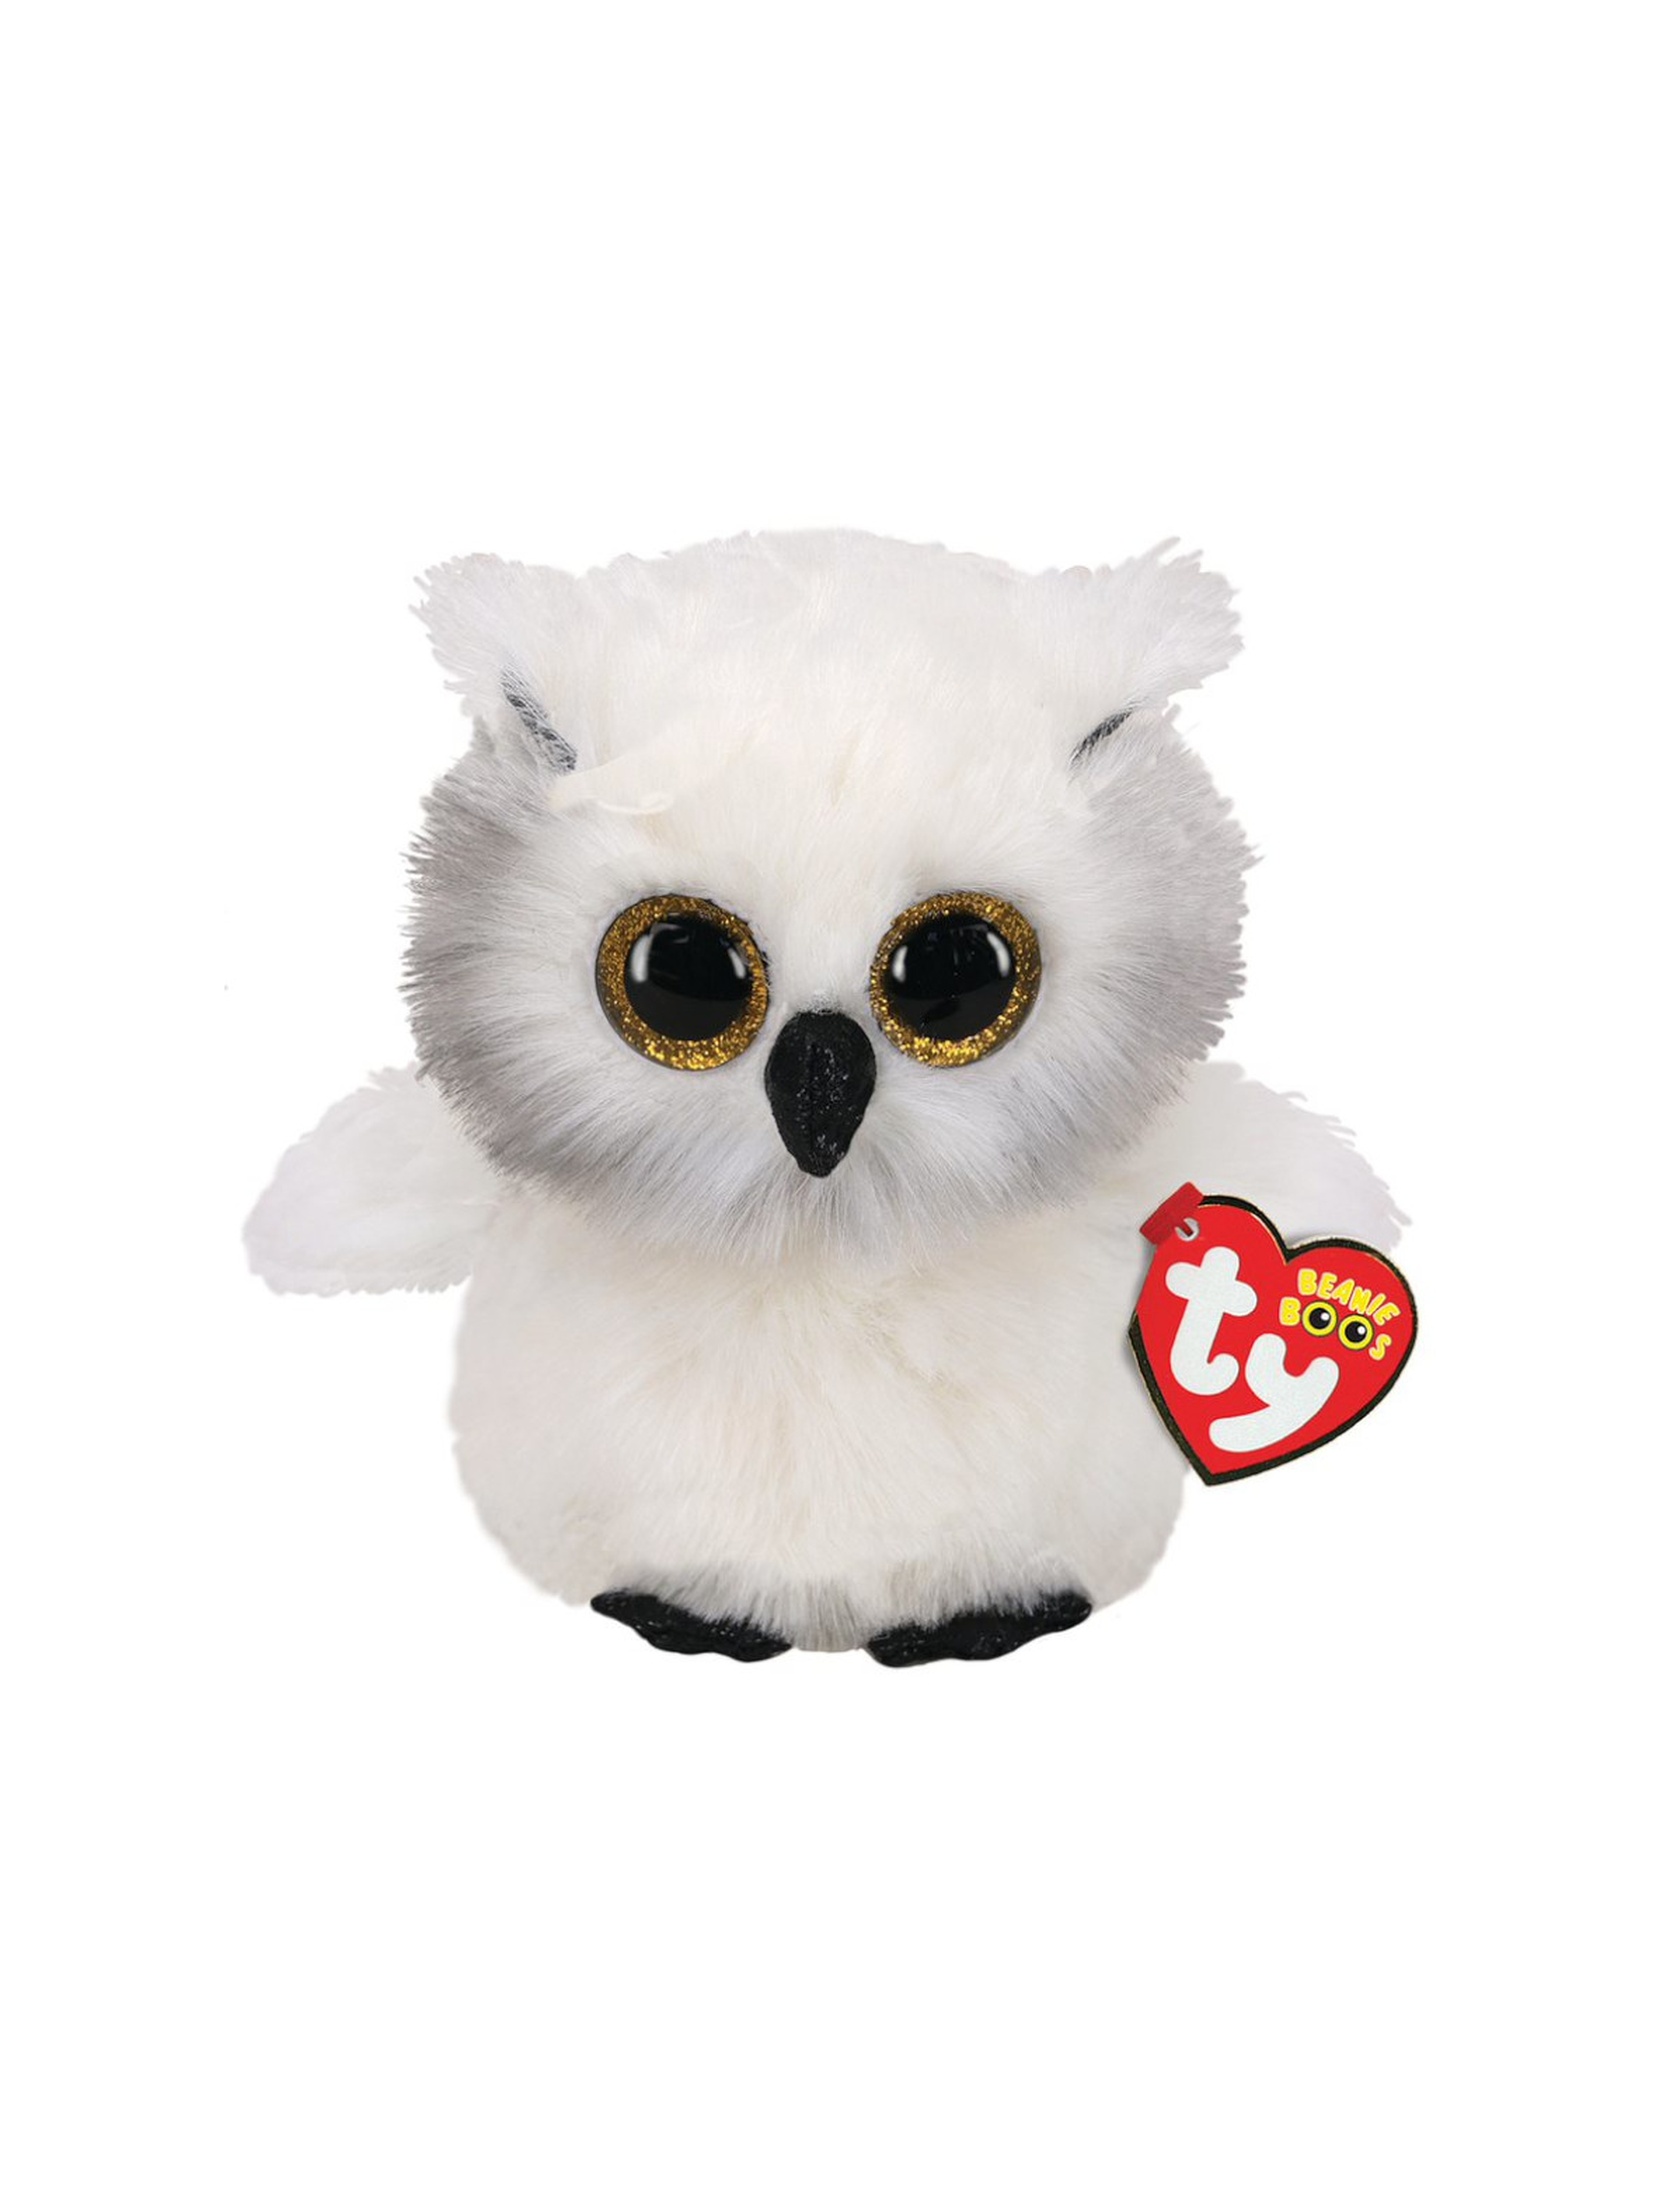 BOOS AUSTIN 15 cm - white owl